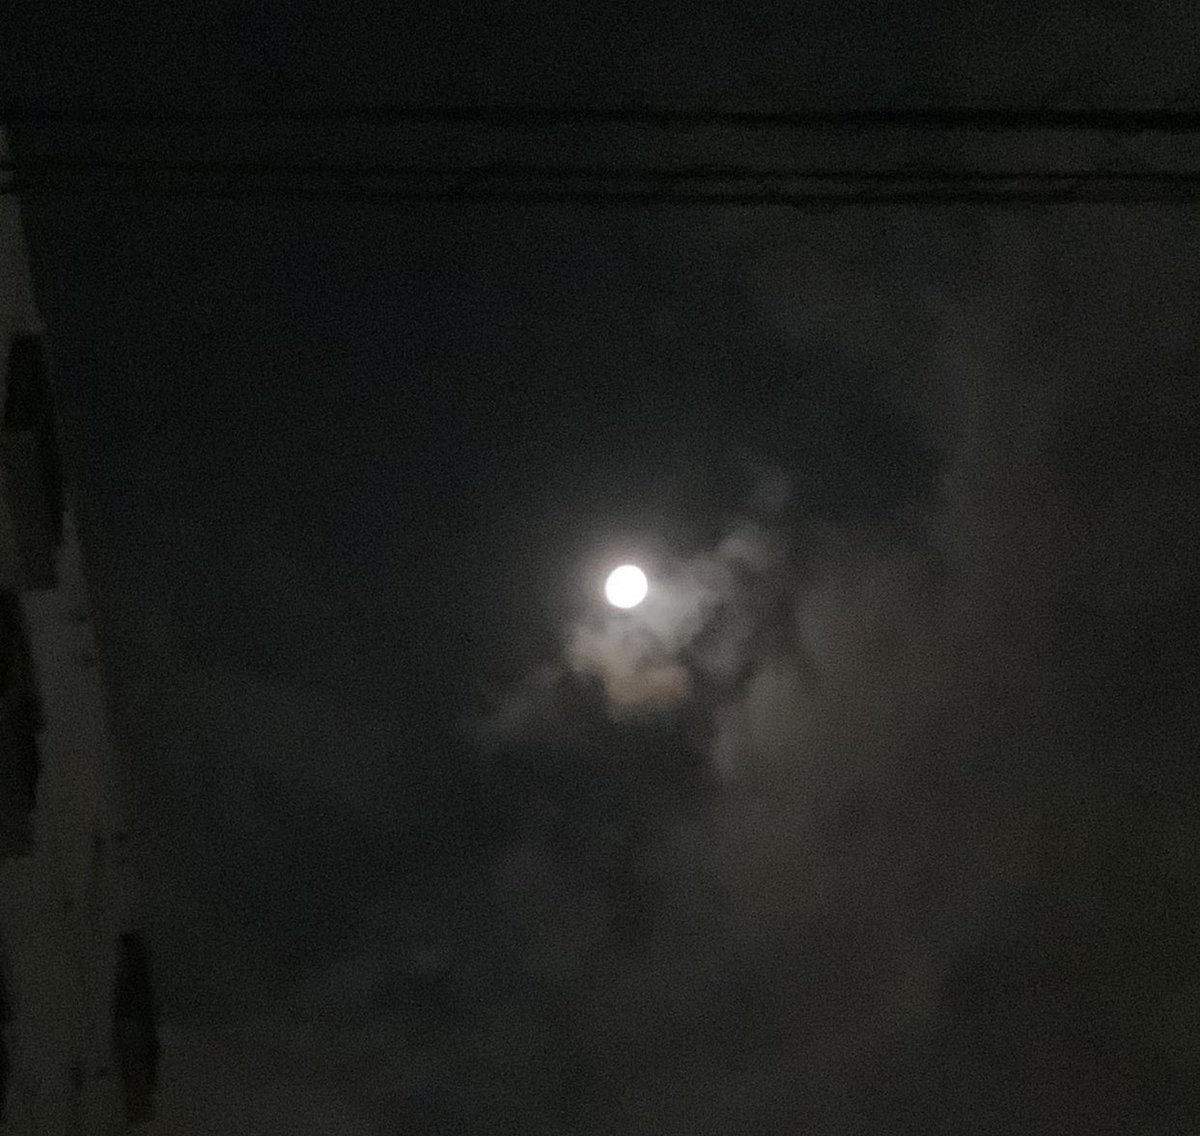 ドラクエウォーク中に雲が切れて、綺麗なお月様!☺️ 